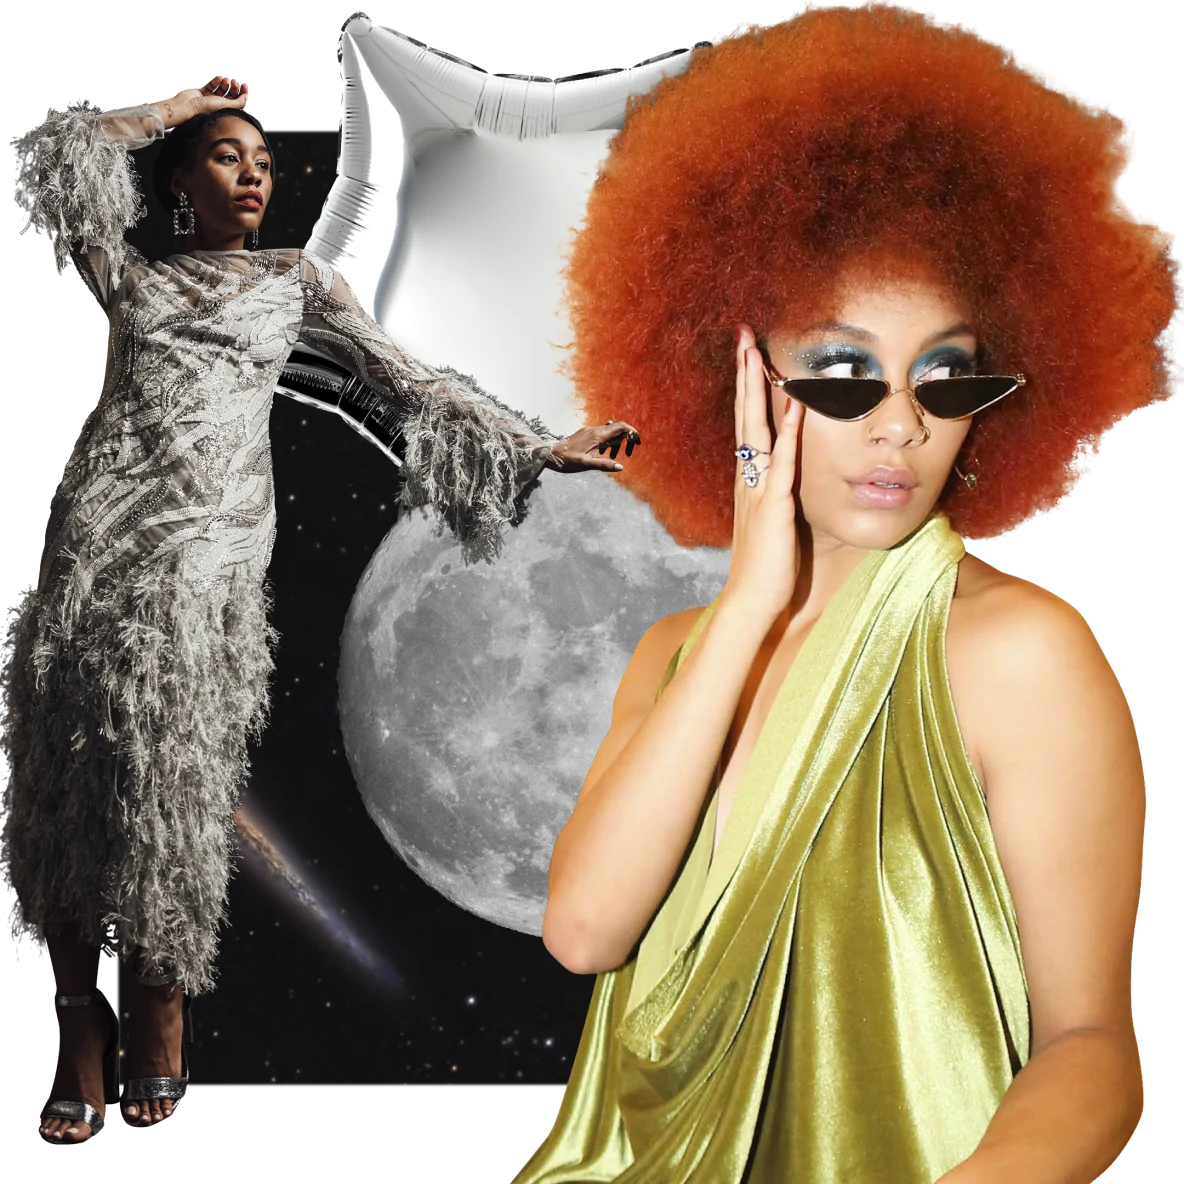 À esquerda, mulher negra com vestido cinza felpudo apoia o braço em uma lua cheia, ao fundo. À direita, mulher negra com cabelo ruivo e vestido de seda verde. Espaço sideral no plano de fundo e um balão prateado em formato de estrela na parte superior.